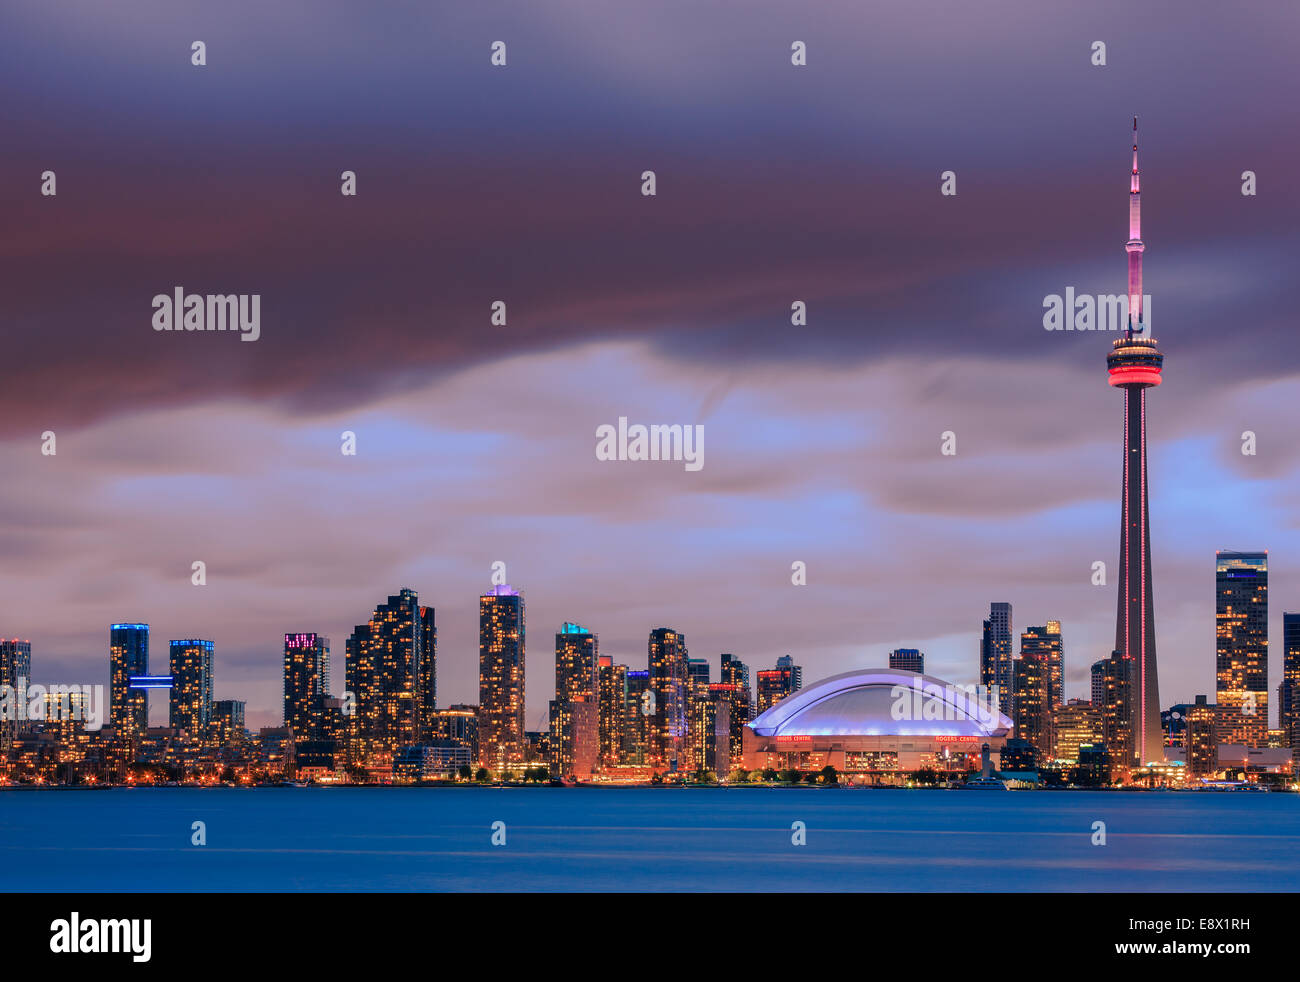 Berühmte Skyline von Toronto mit dem CN Tower und Rogers Centre nach Sonnenuntergang die Toronto Islands entnommen. Stockfoto